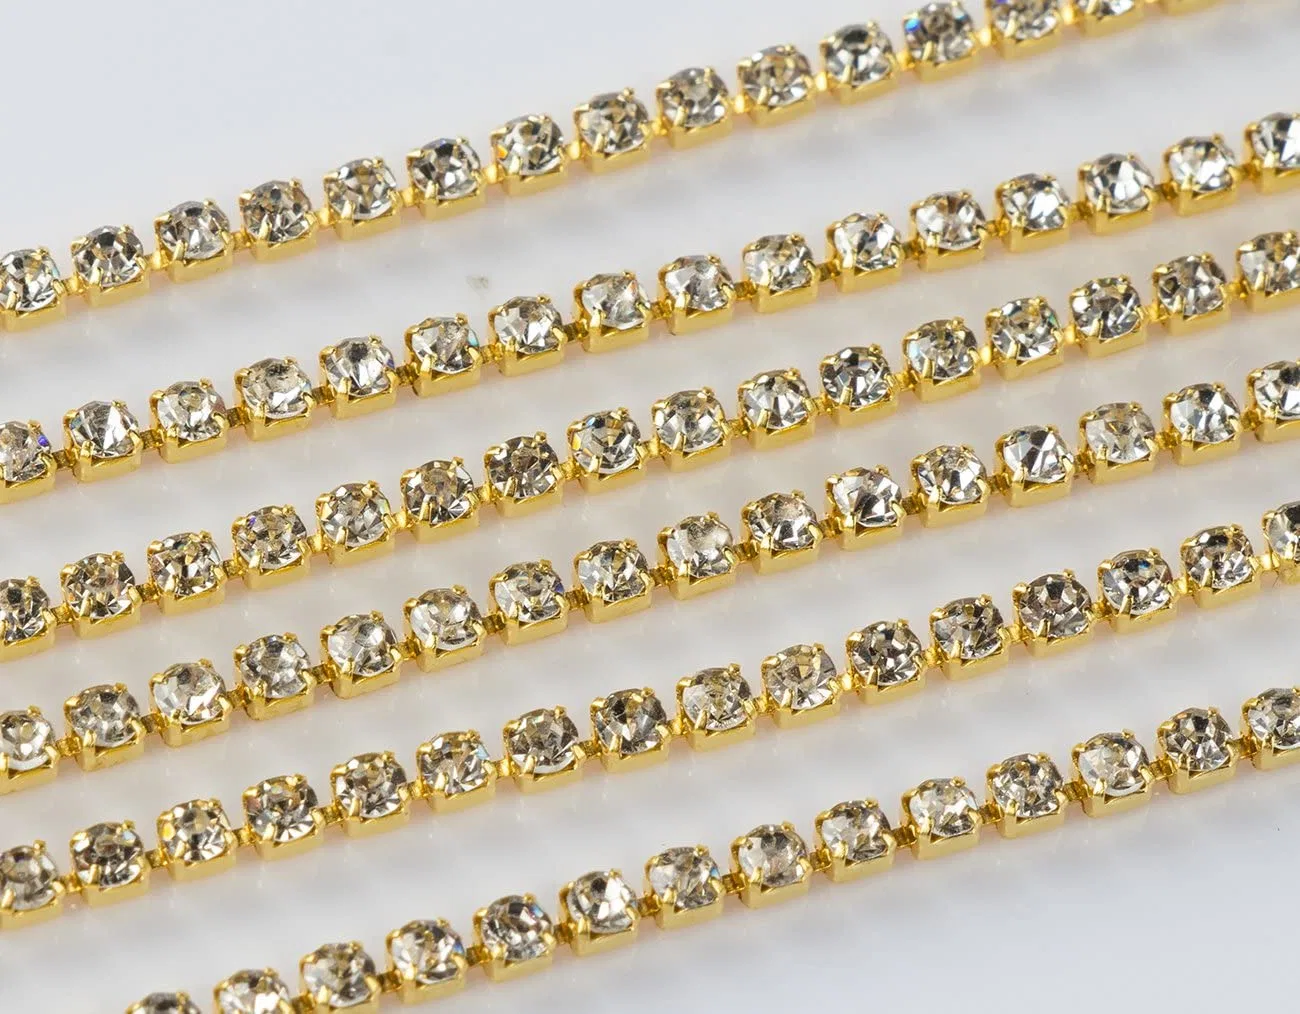 Wholesale Gold 2.0mm largeur Rhinestone Dainty Body Chain Shining collier Accessoires en acier inoxydable non allergique pour chaîne de corps en vêtements pour femmes Fabrication de bijoux